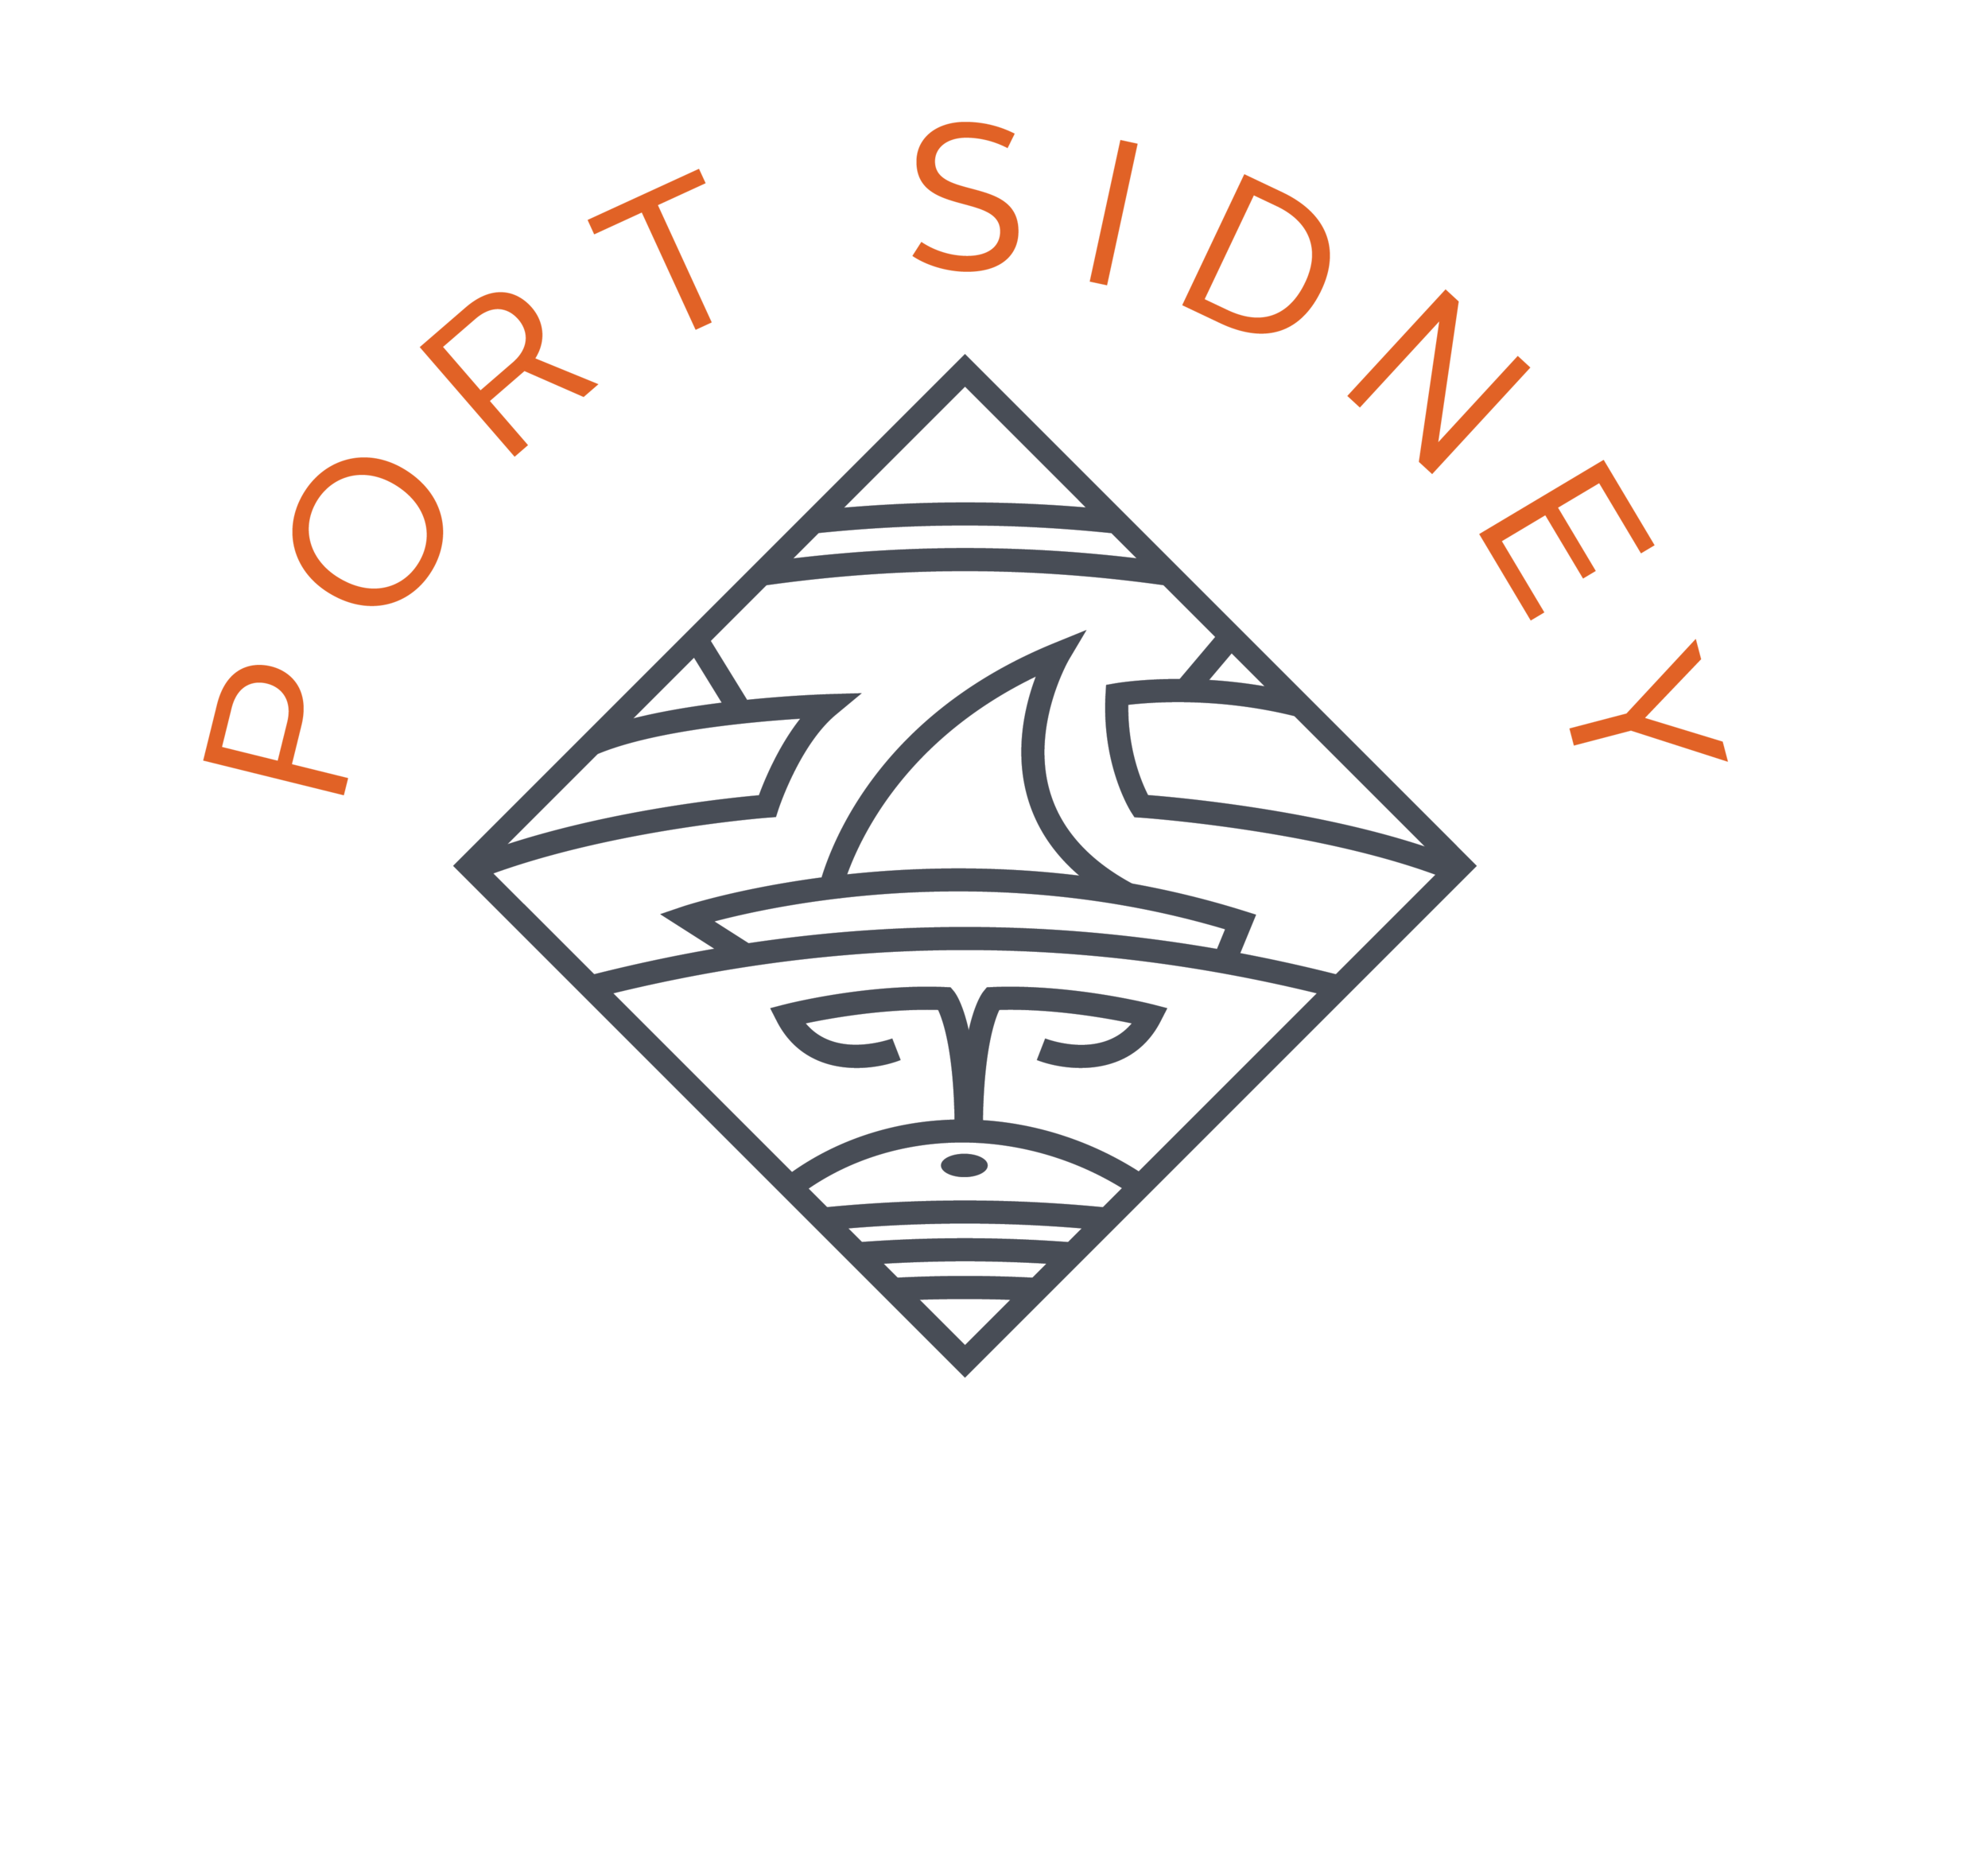 Port Sidney